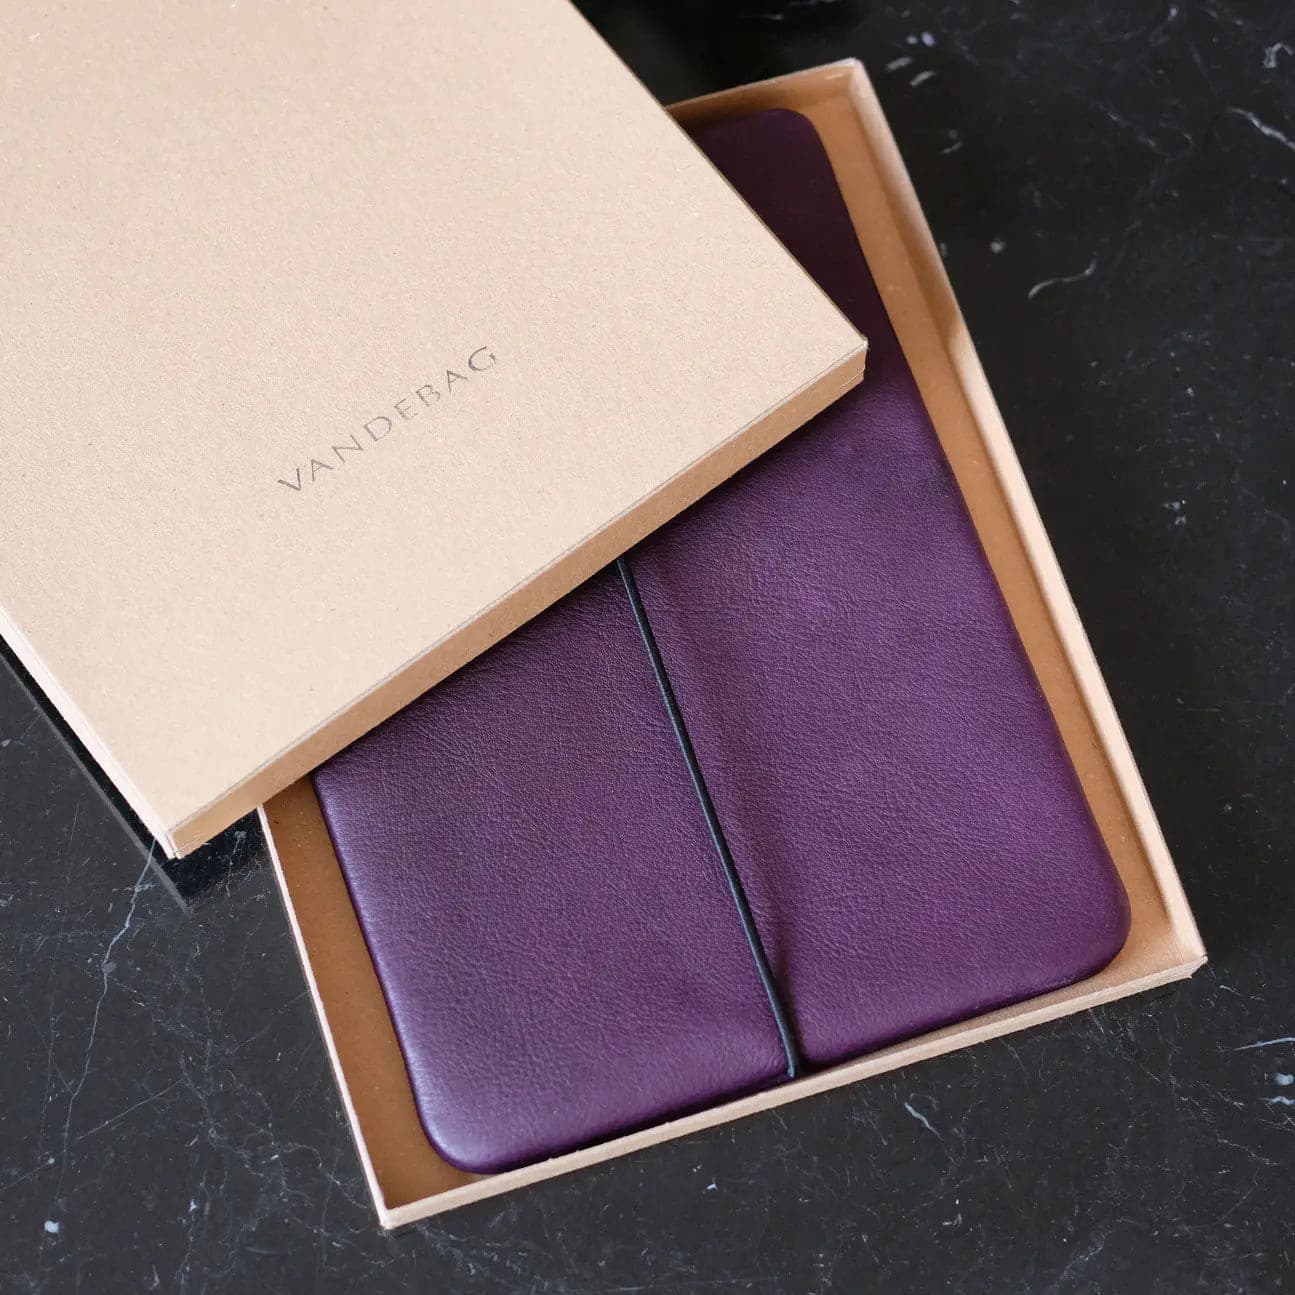 Macbookhülle aus lila Leder liegt in Geschenkkarton